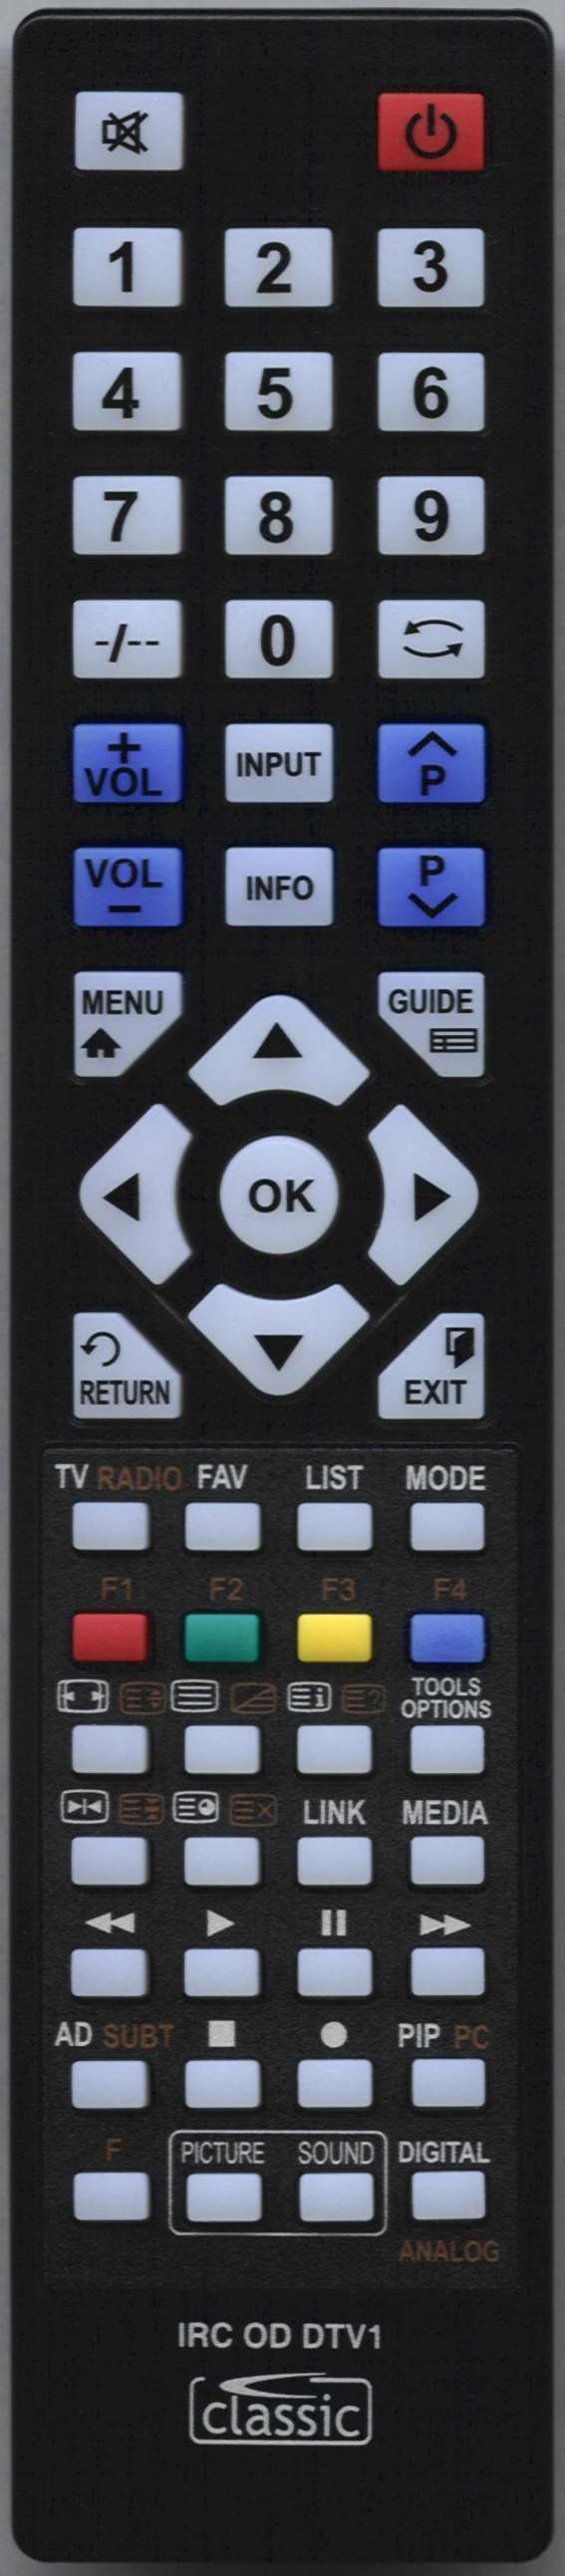 LG 75UM7110 Remote Control Alternative